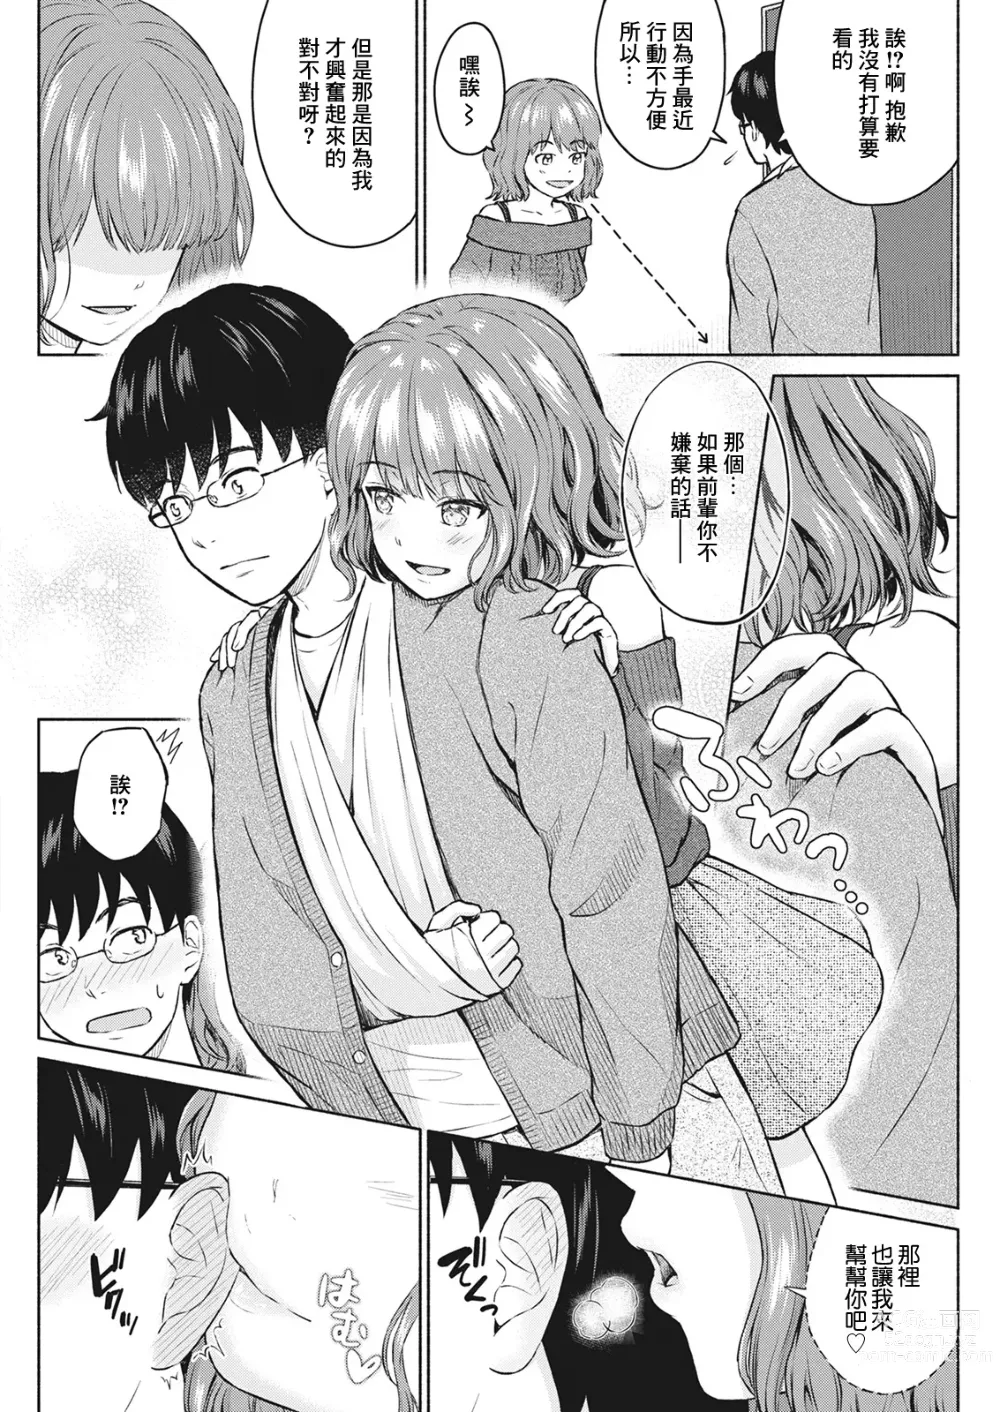 Page 4 of manga Sukisuki Daisuki Chouchou Aishiteru